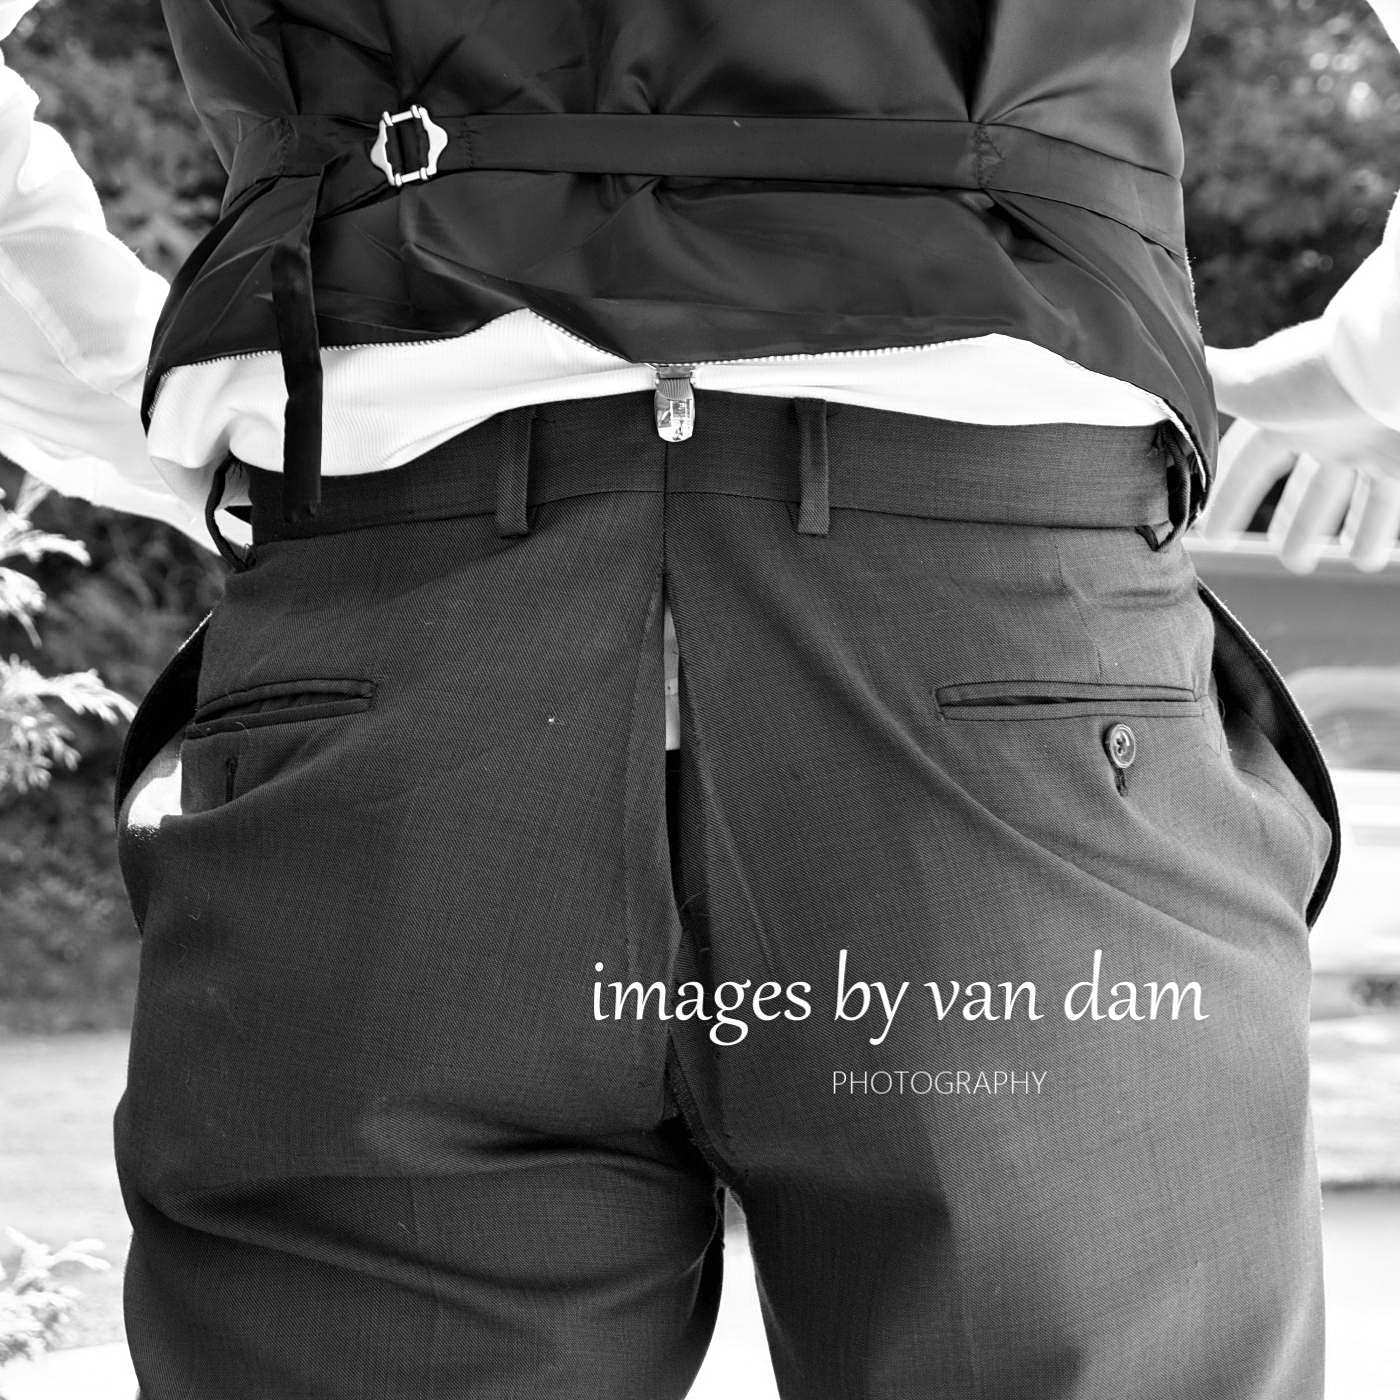 groom's pants split down seam